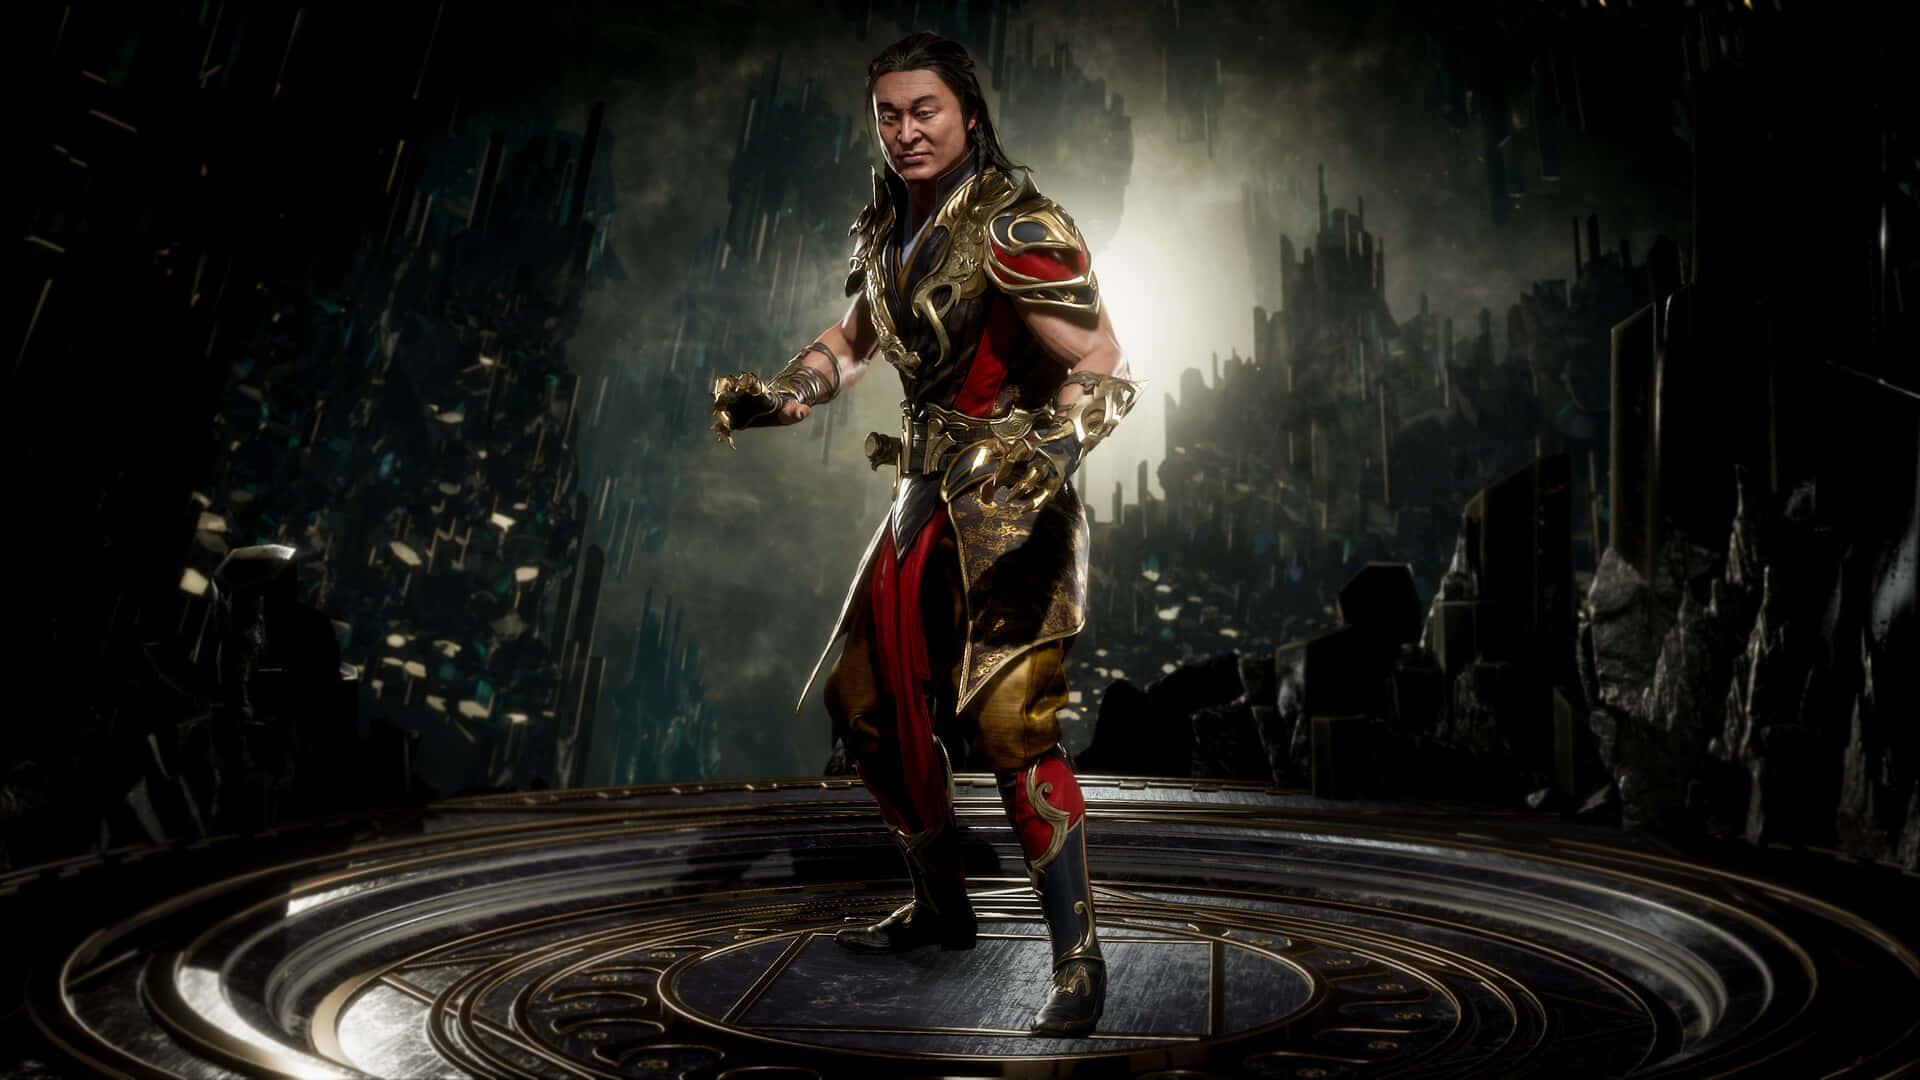 [100+] Mortal Kombat Shang Tsung Wallpapers | Wallpapers.com